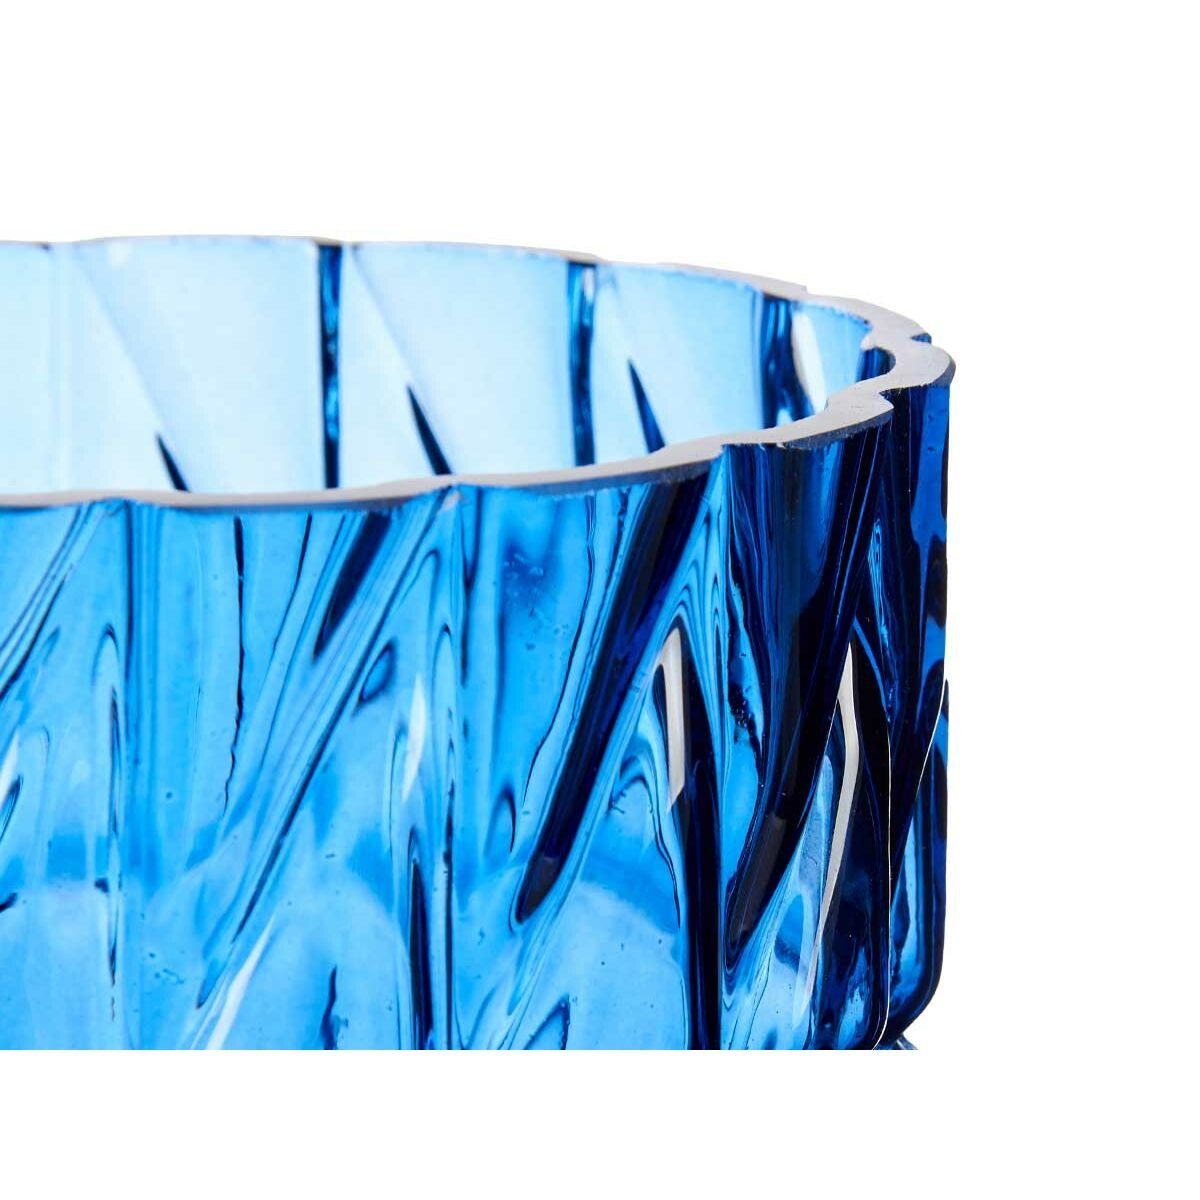 Dekovase Vase Schnitzerei Gift 13 Stück 13 Glas Decor 26,5 6 x x cm Blau